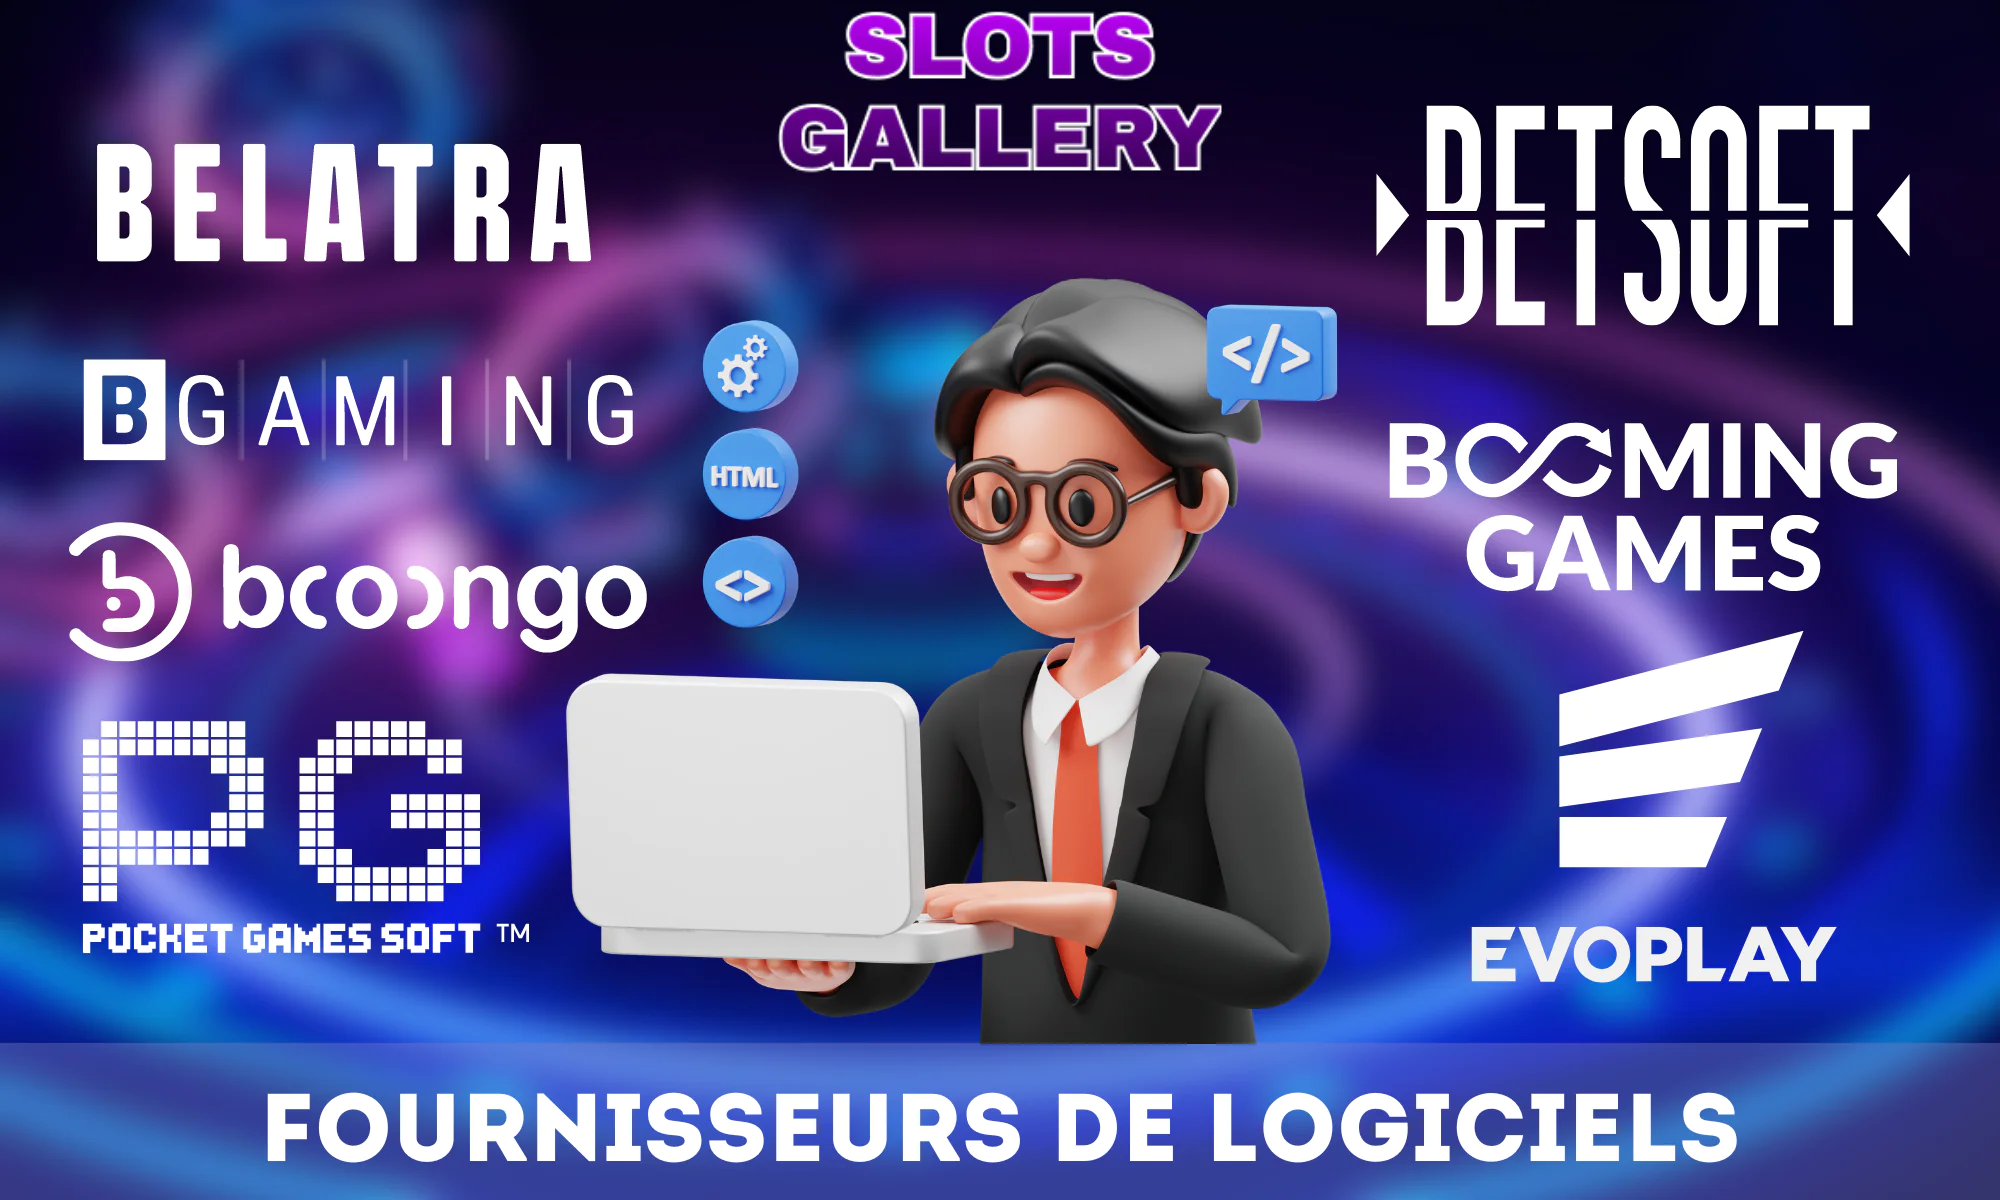 Slots Gallery Casino en partenariat avec plus de 50 fournisseurs de jeux différents